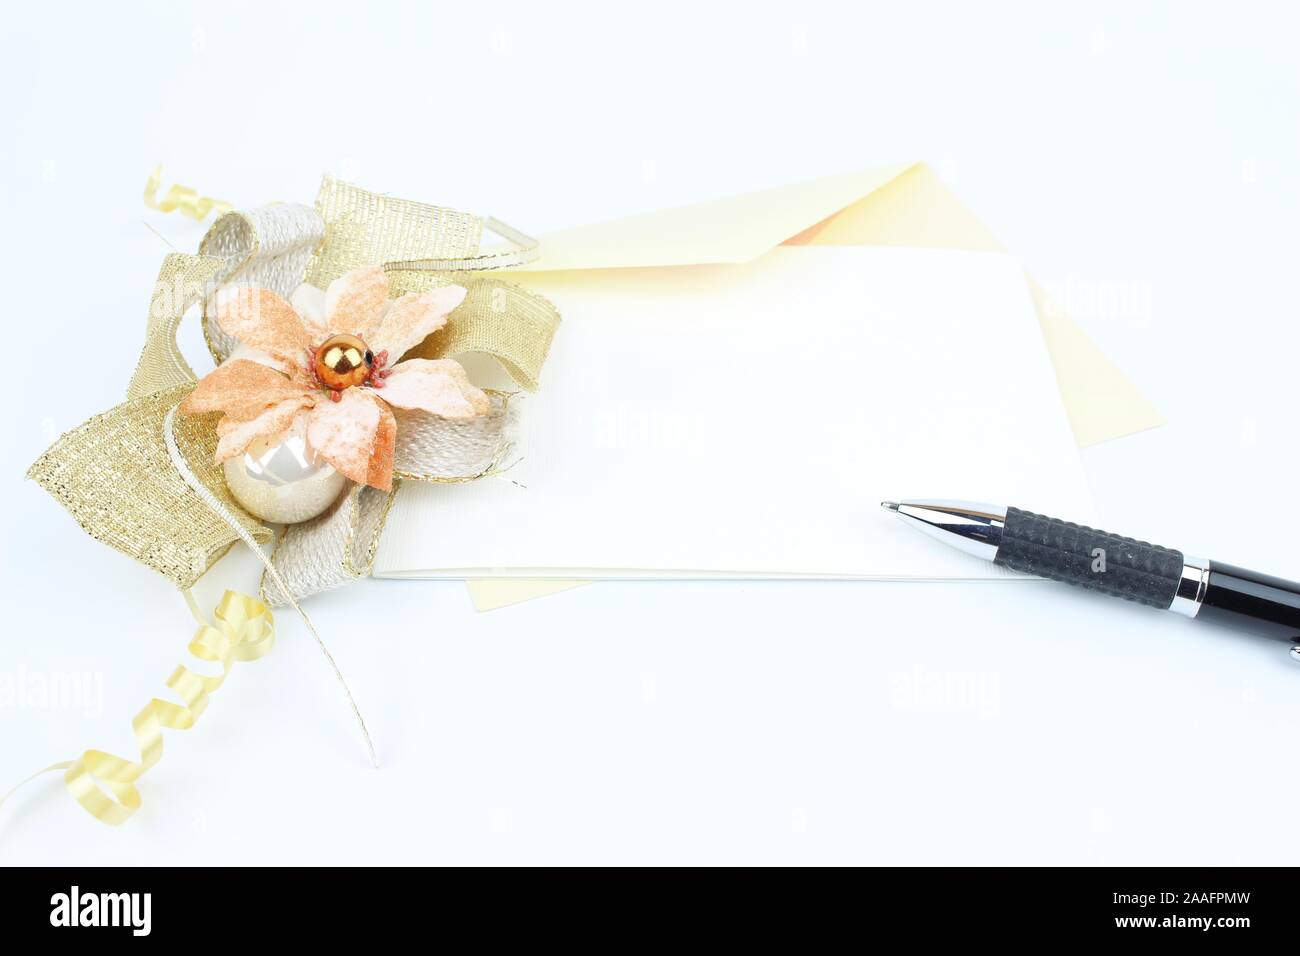 Le matériel nécessaire pour écrire une lettre à l'occasion de fêtes ou pour Noël ou pour Noël. Avec une enveloppe et un stylo, une décoration comme une couronne colorée. Banque D'Images